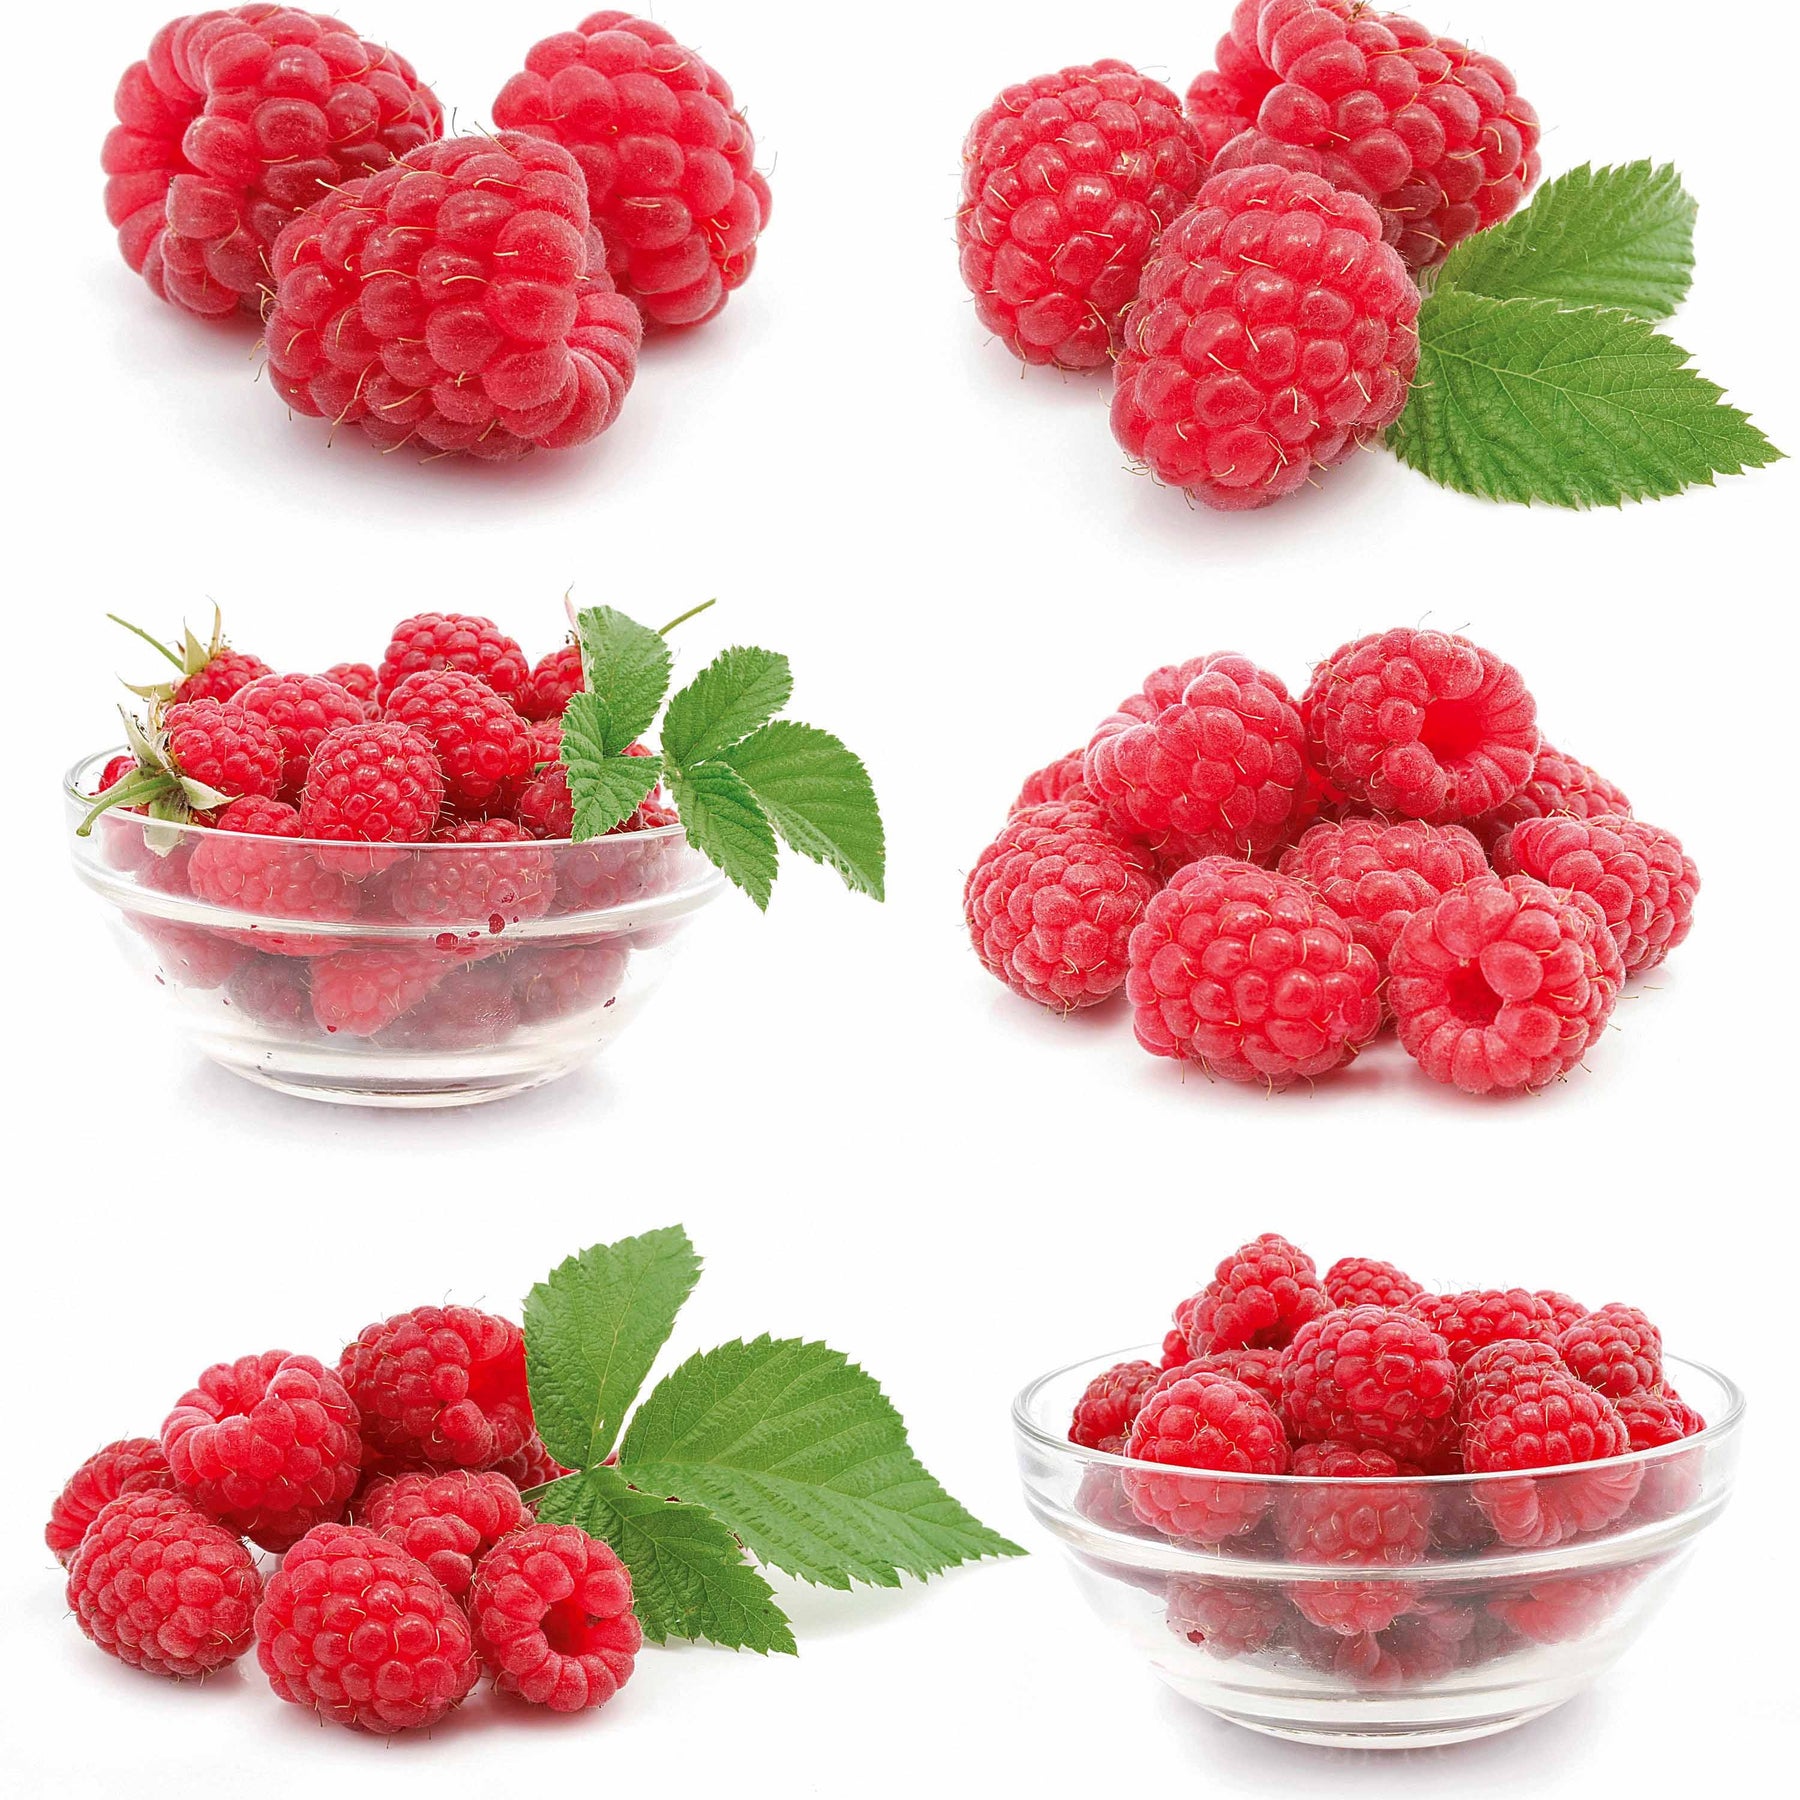 Framboisier nain et compact non remontant Beauté rubis ® - Rubus idaeus ruby beauty ® - Fruitiers Arbres et arbustes